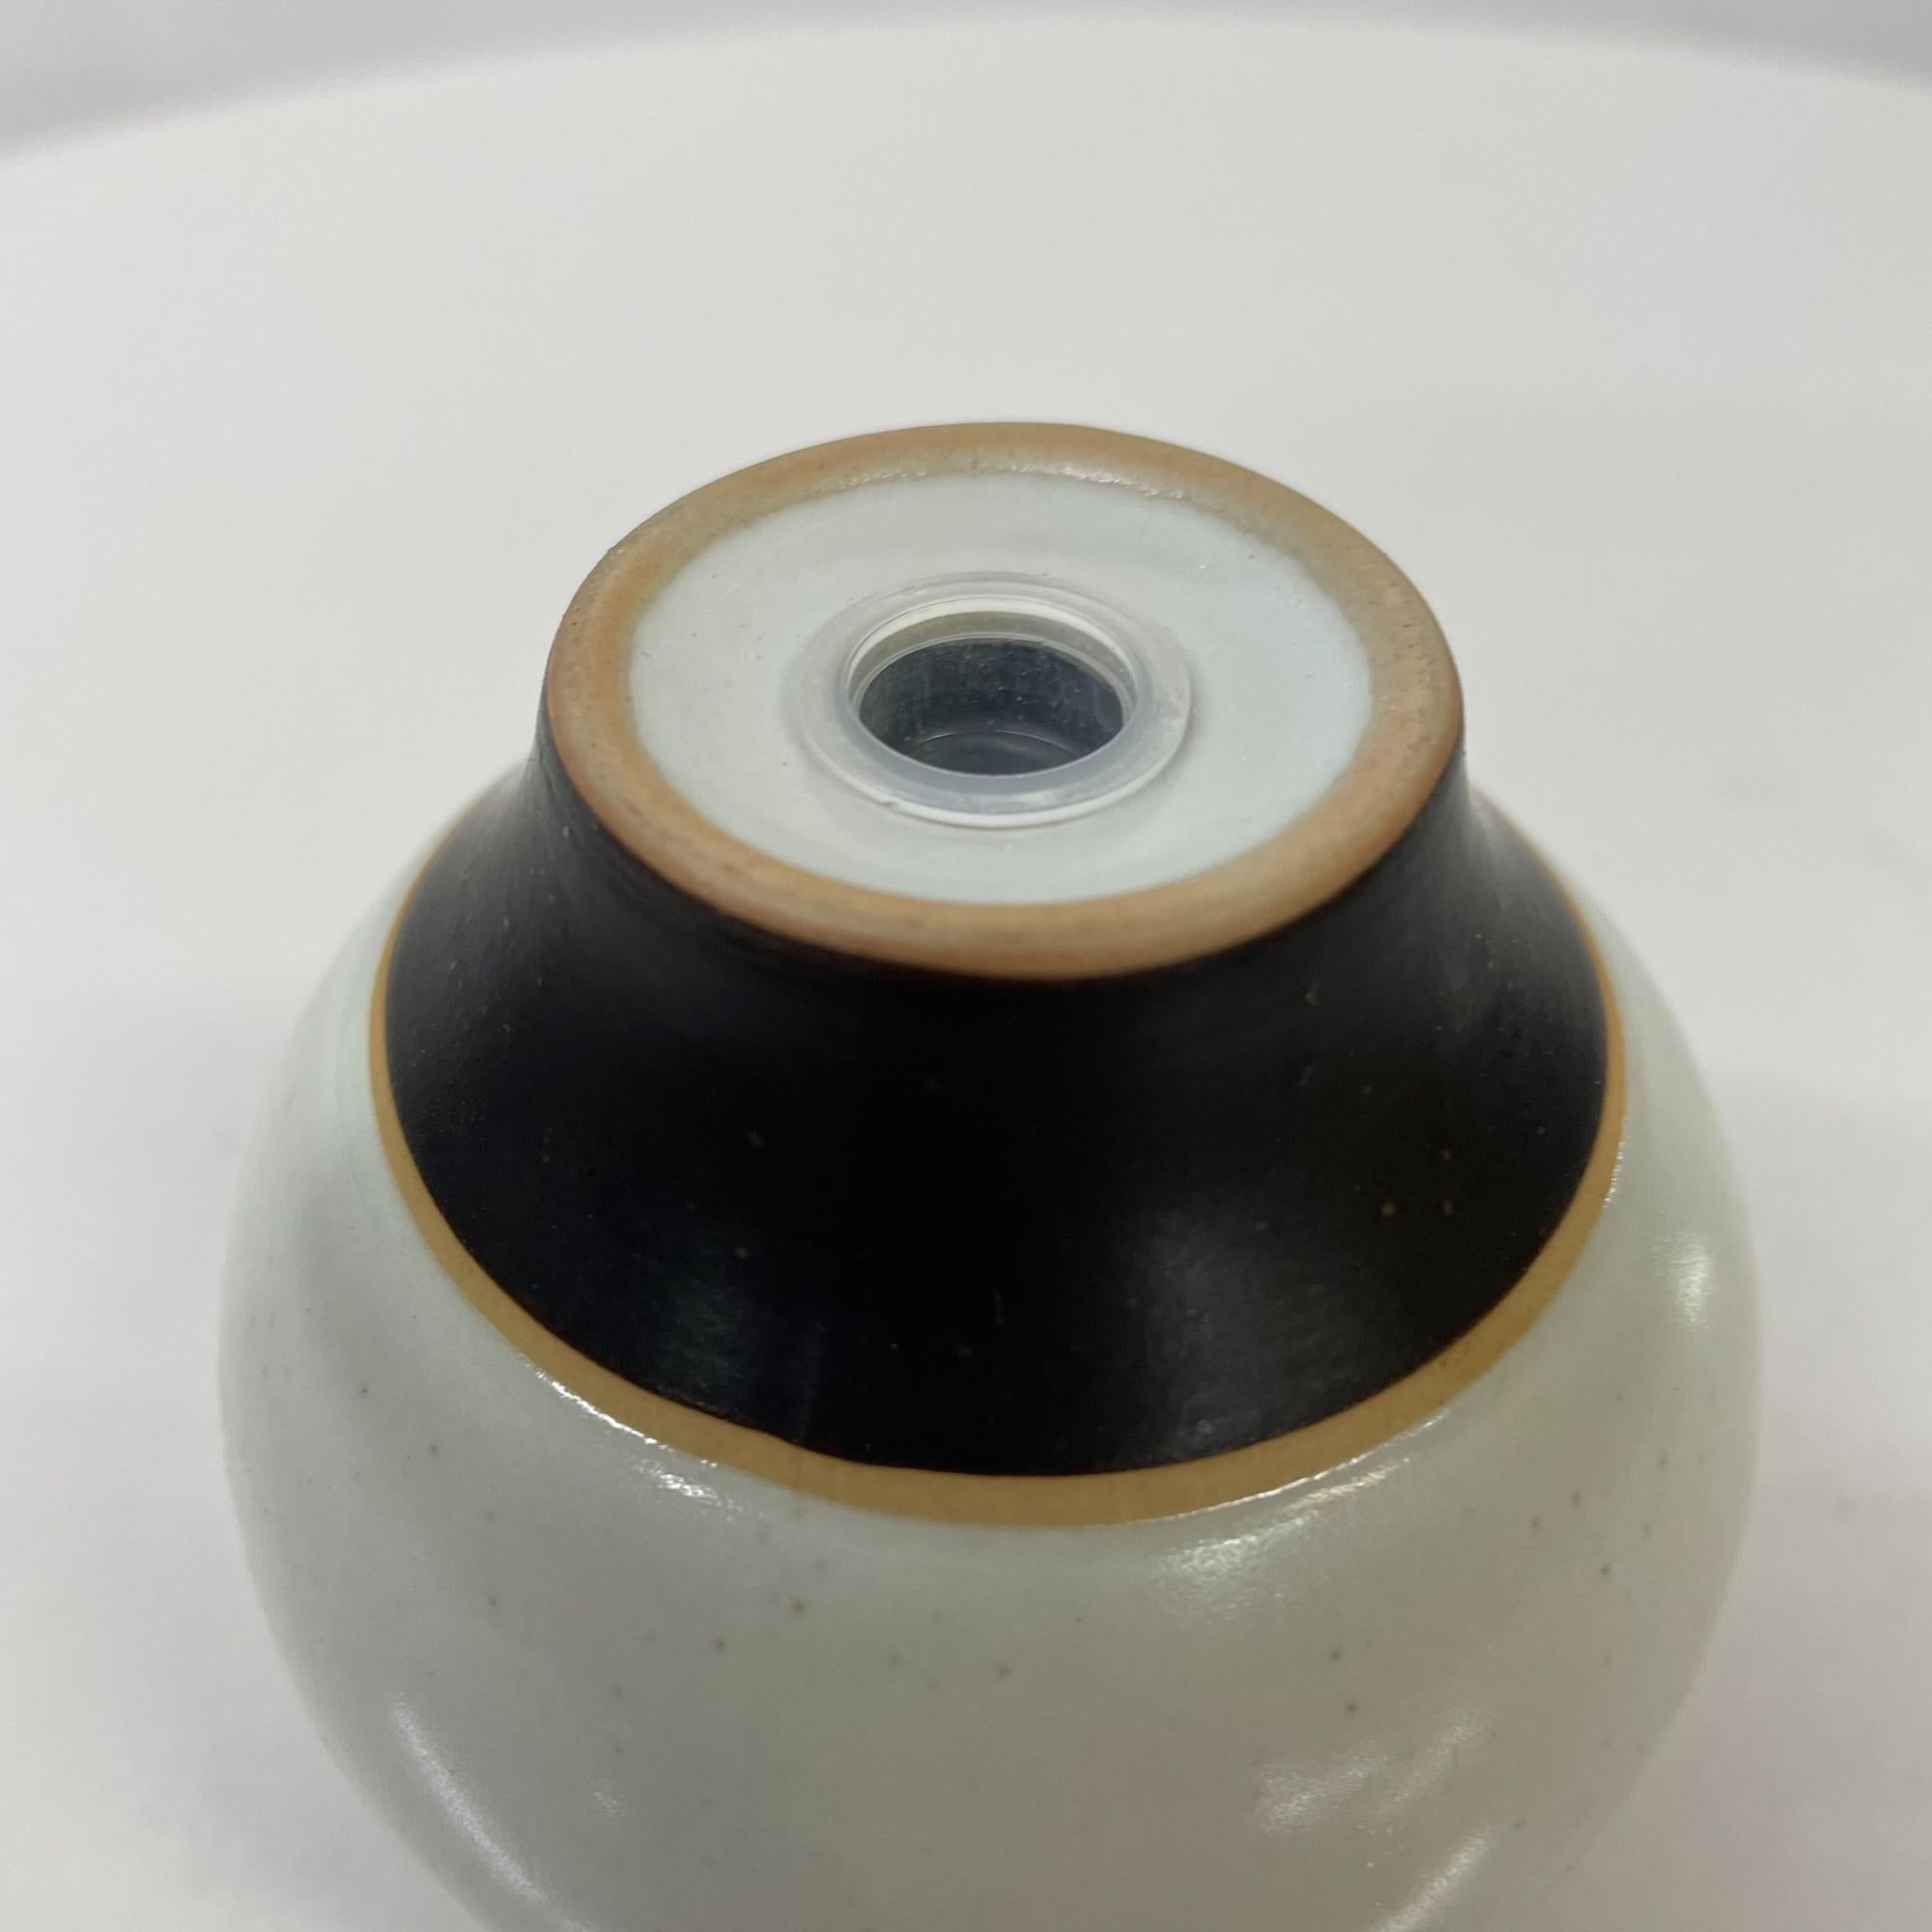 1980s Modernist Pottery Salt or Pepper Shaker Post Modern Design Black Gray 9